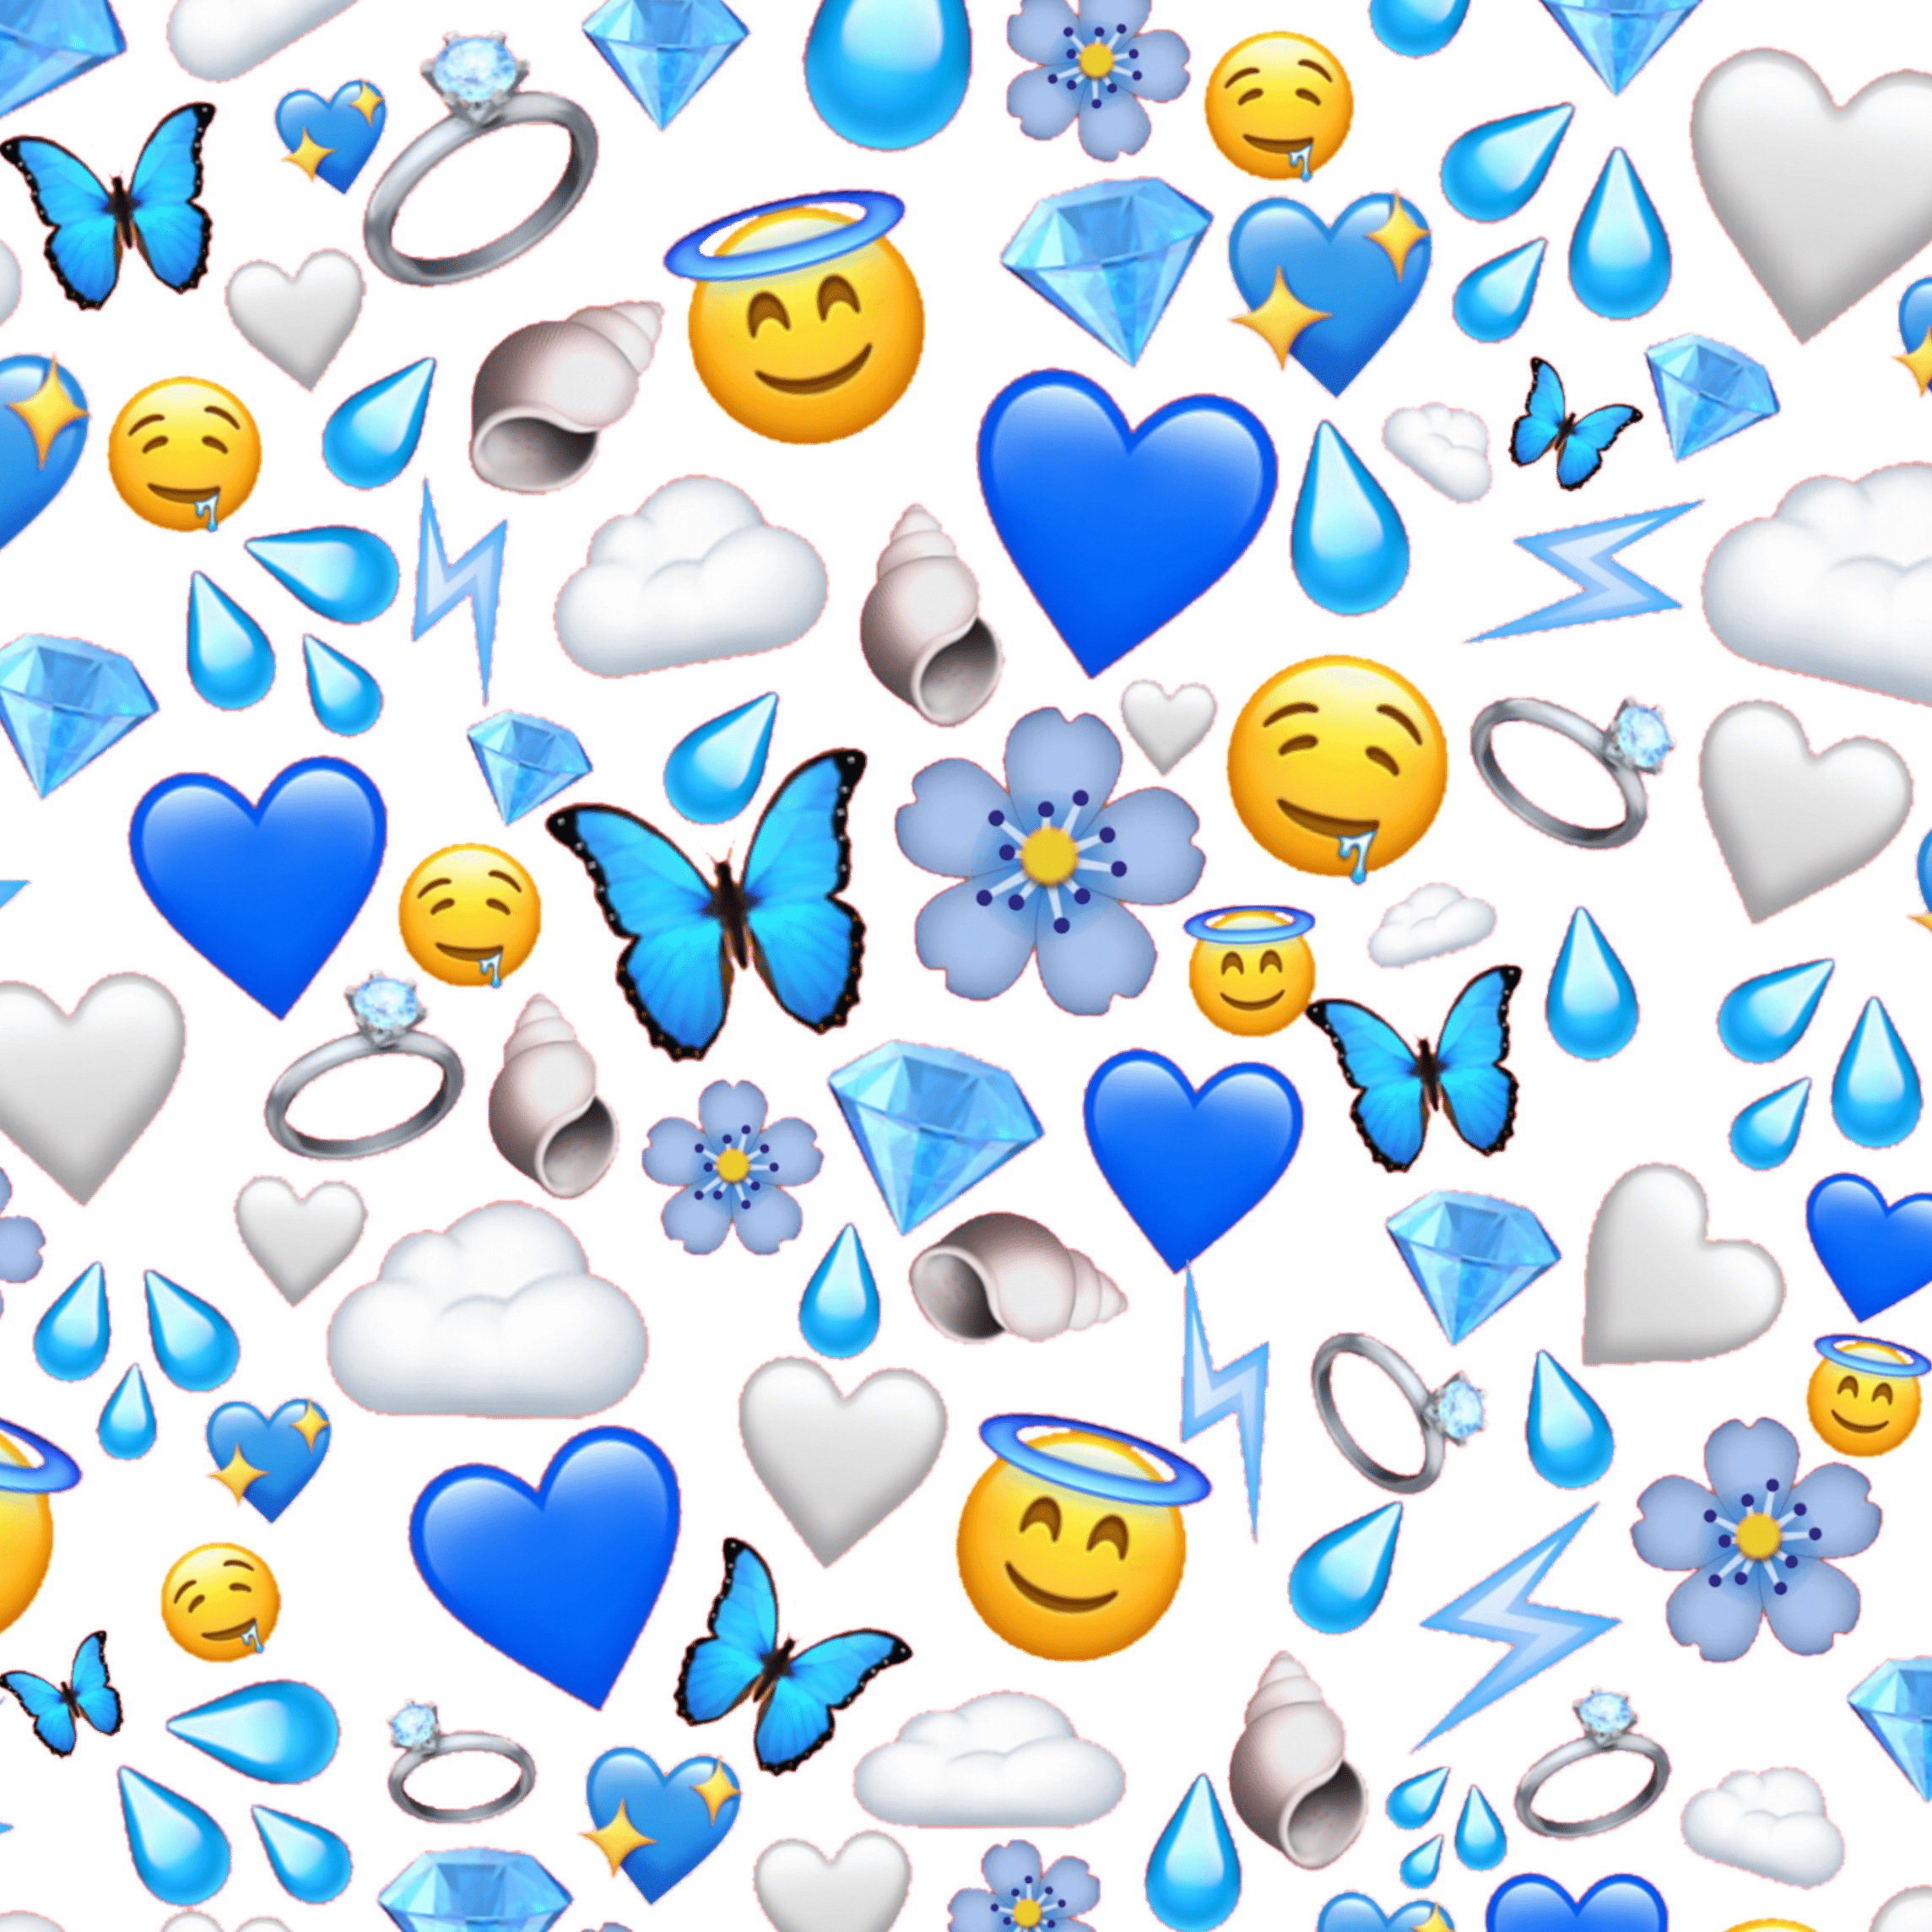 2289x2289 màu xanh lam # giấy dán tường # màu xanh lam # đám mây # đám mây #emojis - Biểu tượng cảm xúc màu xanh lam